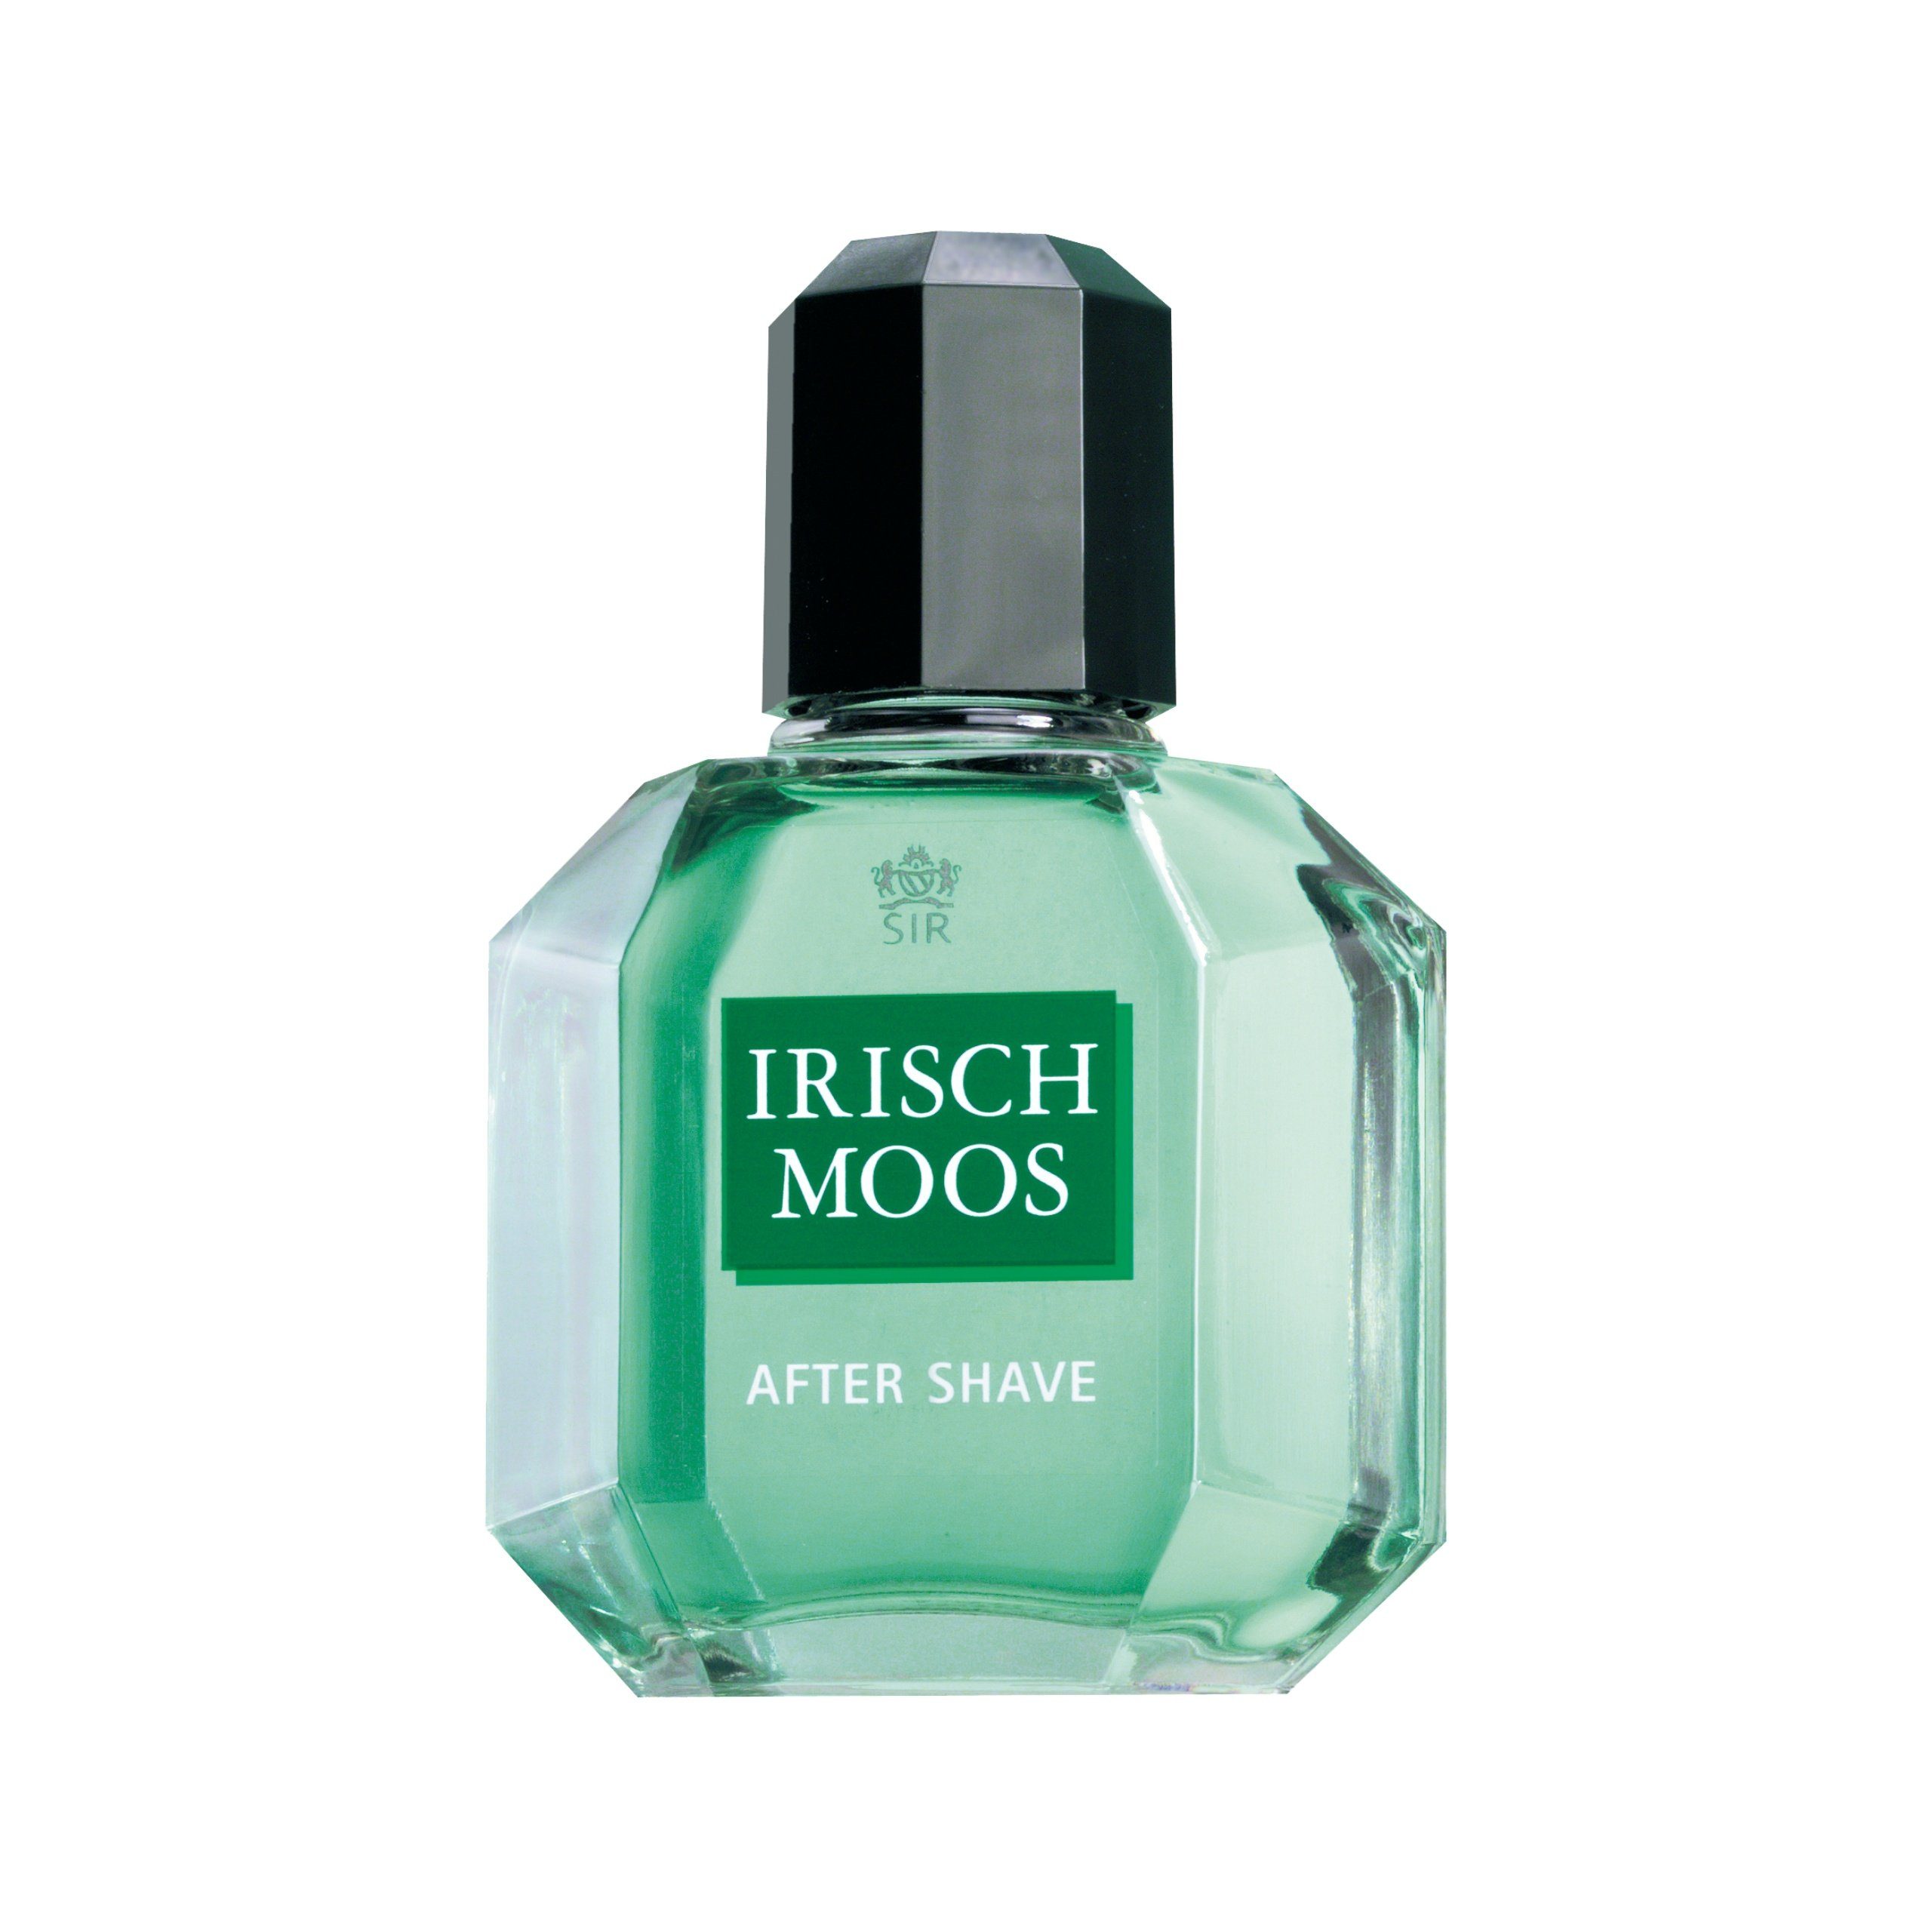 Sir Irisch Moos Gesichts-Reinigungslotion SIR IRISCH MOOS After Shave Lotion 150 ml